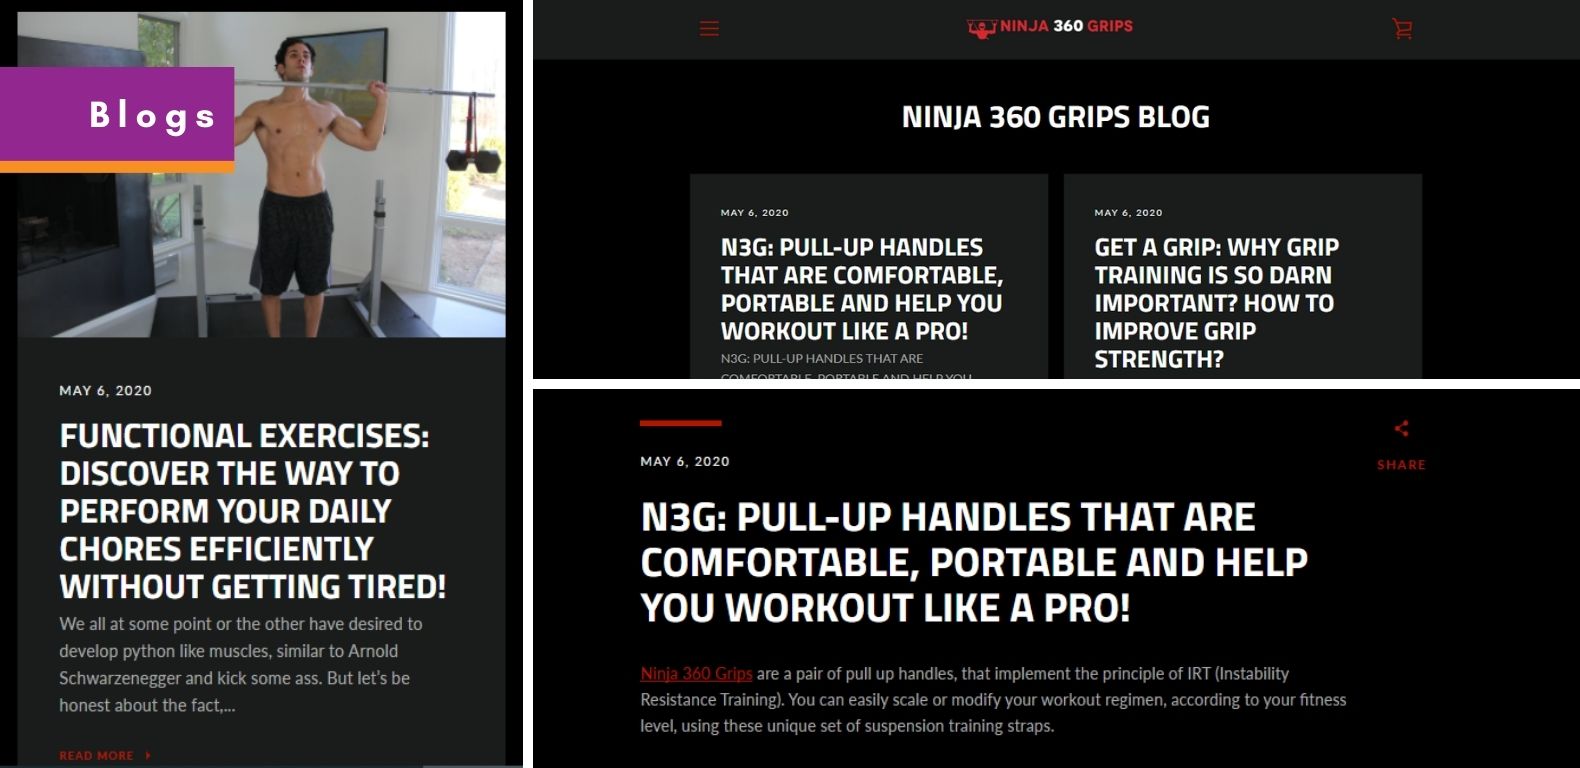 SEO-Ninja-360-Grips-Blog-Posts